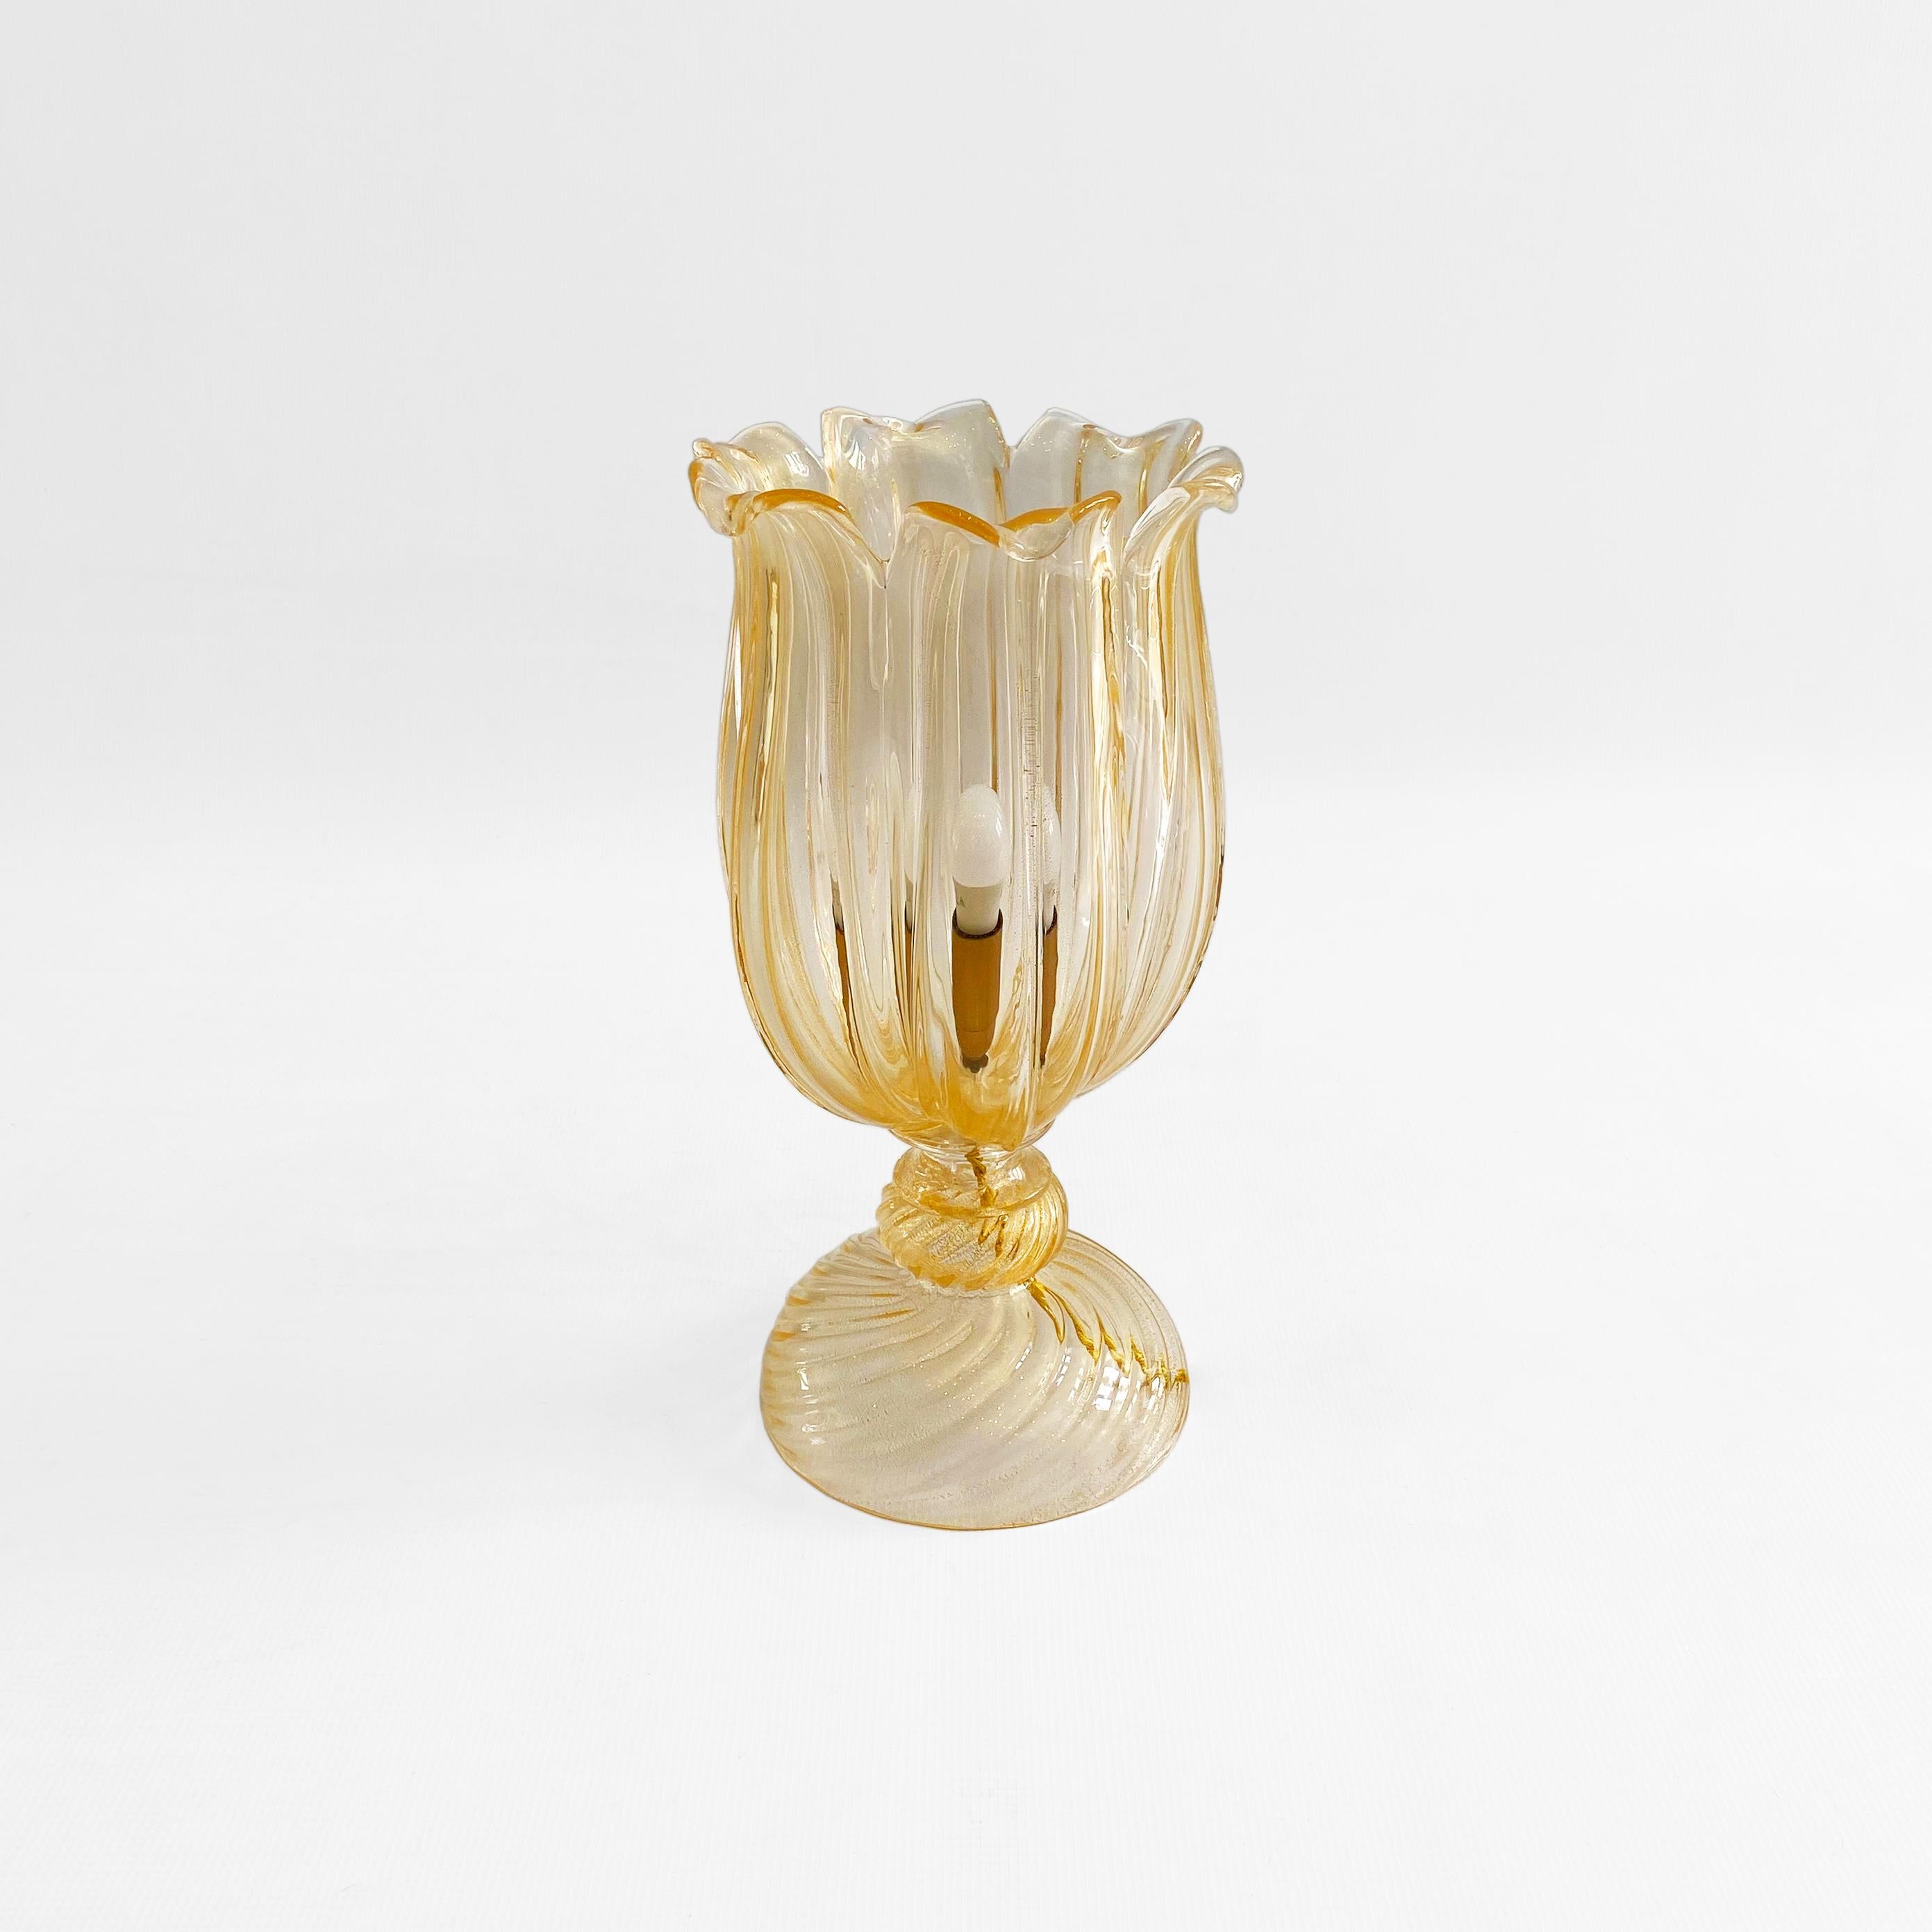 Eine elegante italienische Tischlampe des Meisters des Murano-Glases Archimede Seguso, importiert von seinem ersten Besitzer in Venedig. 

Die Lampe ist meisterhaft mundgeblasen und hat 24-karätige Goldplättchen im geschmolzenen Glas, die ihr einen